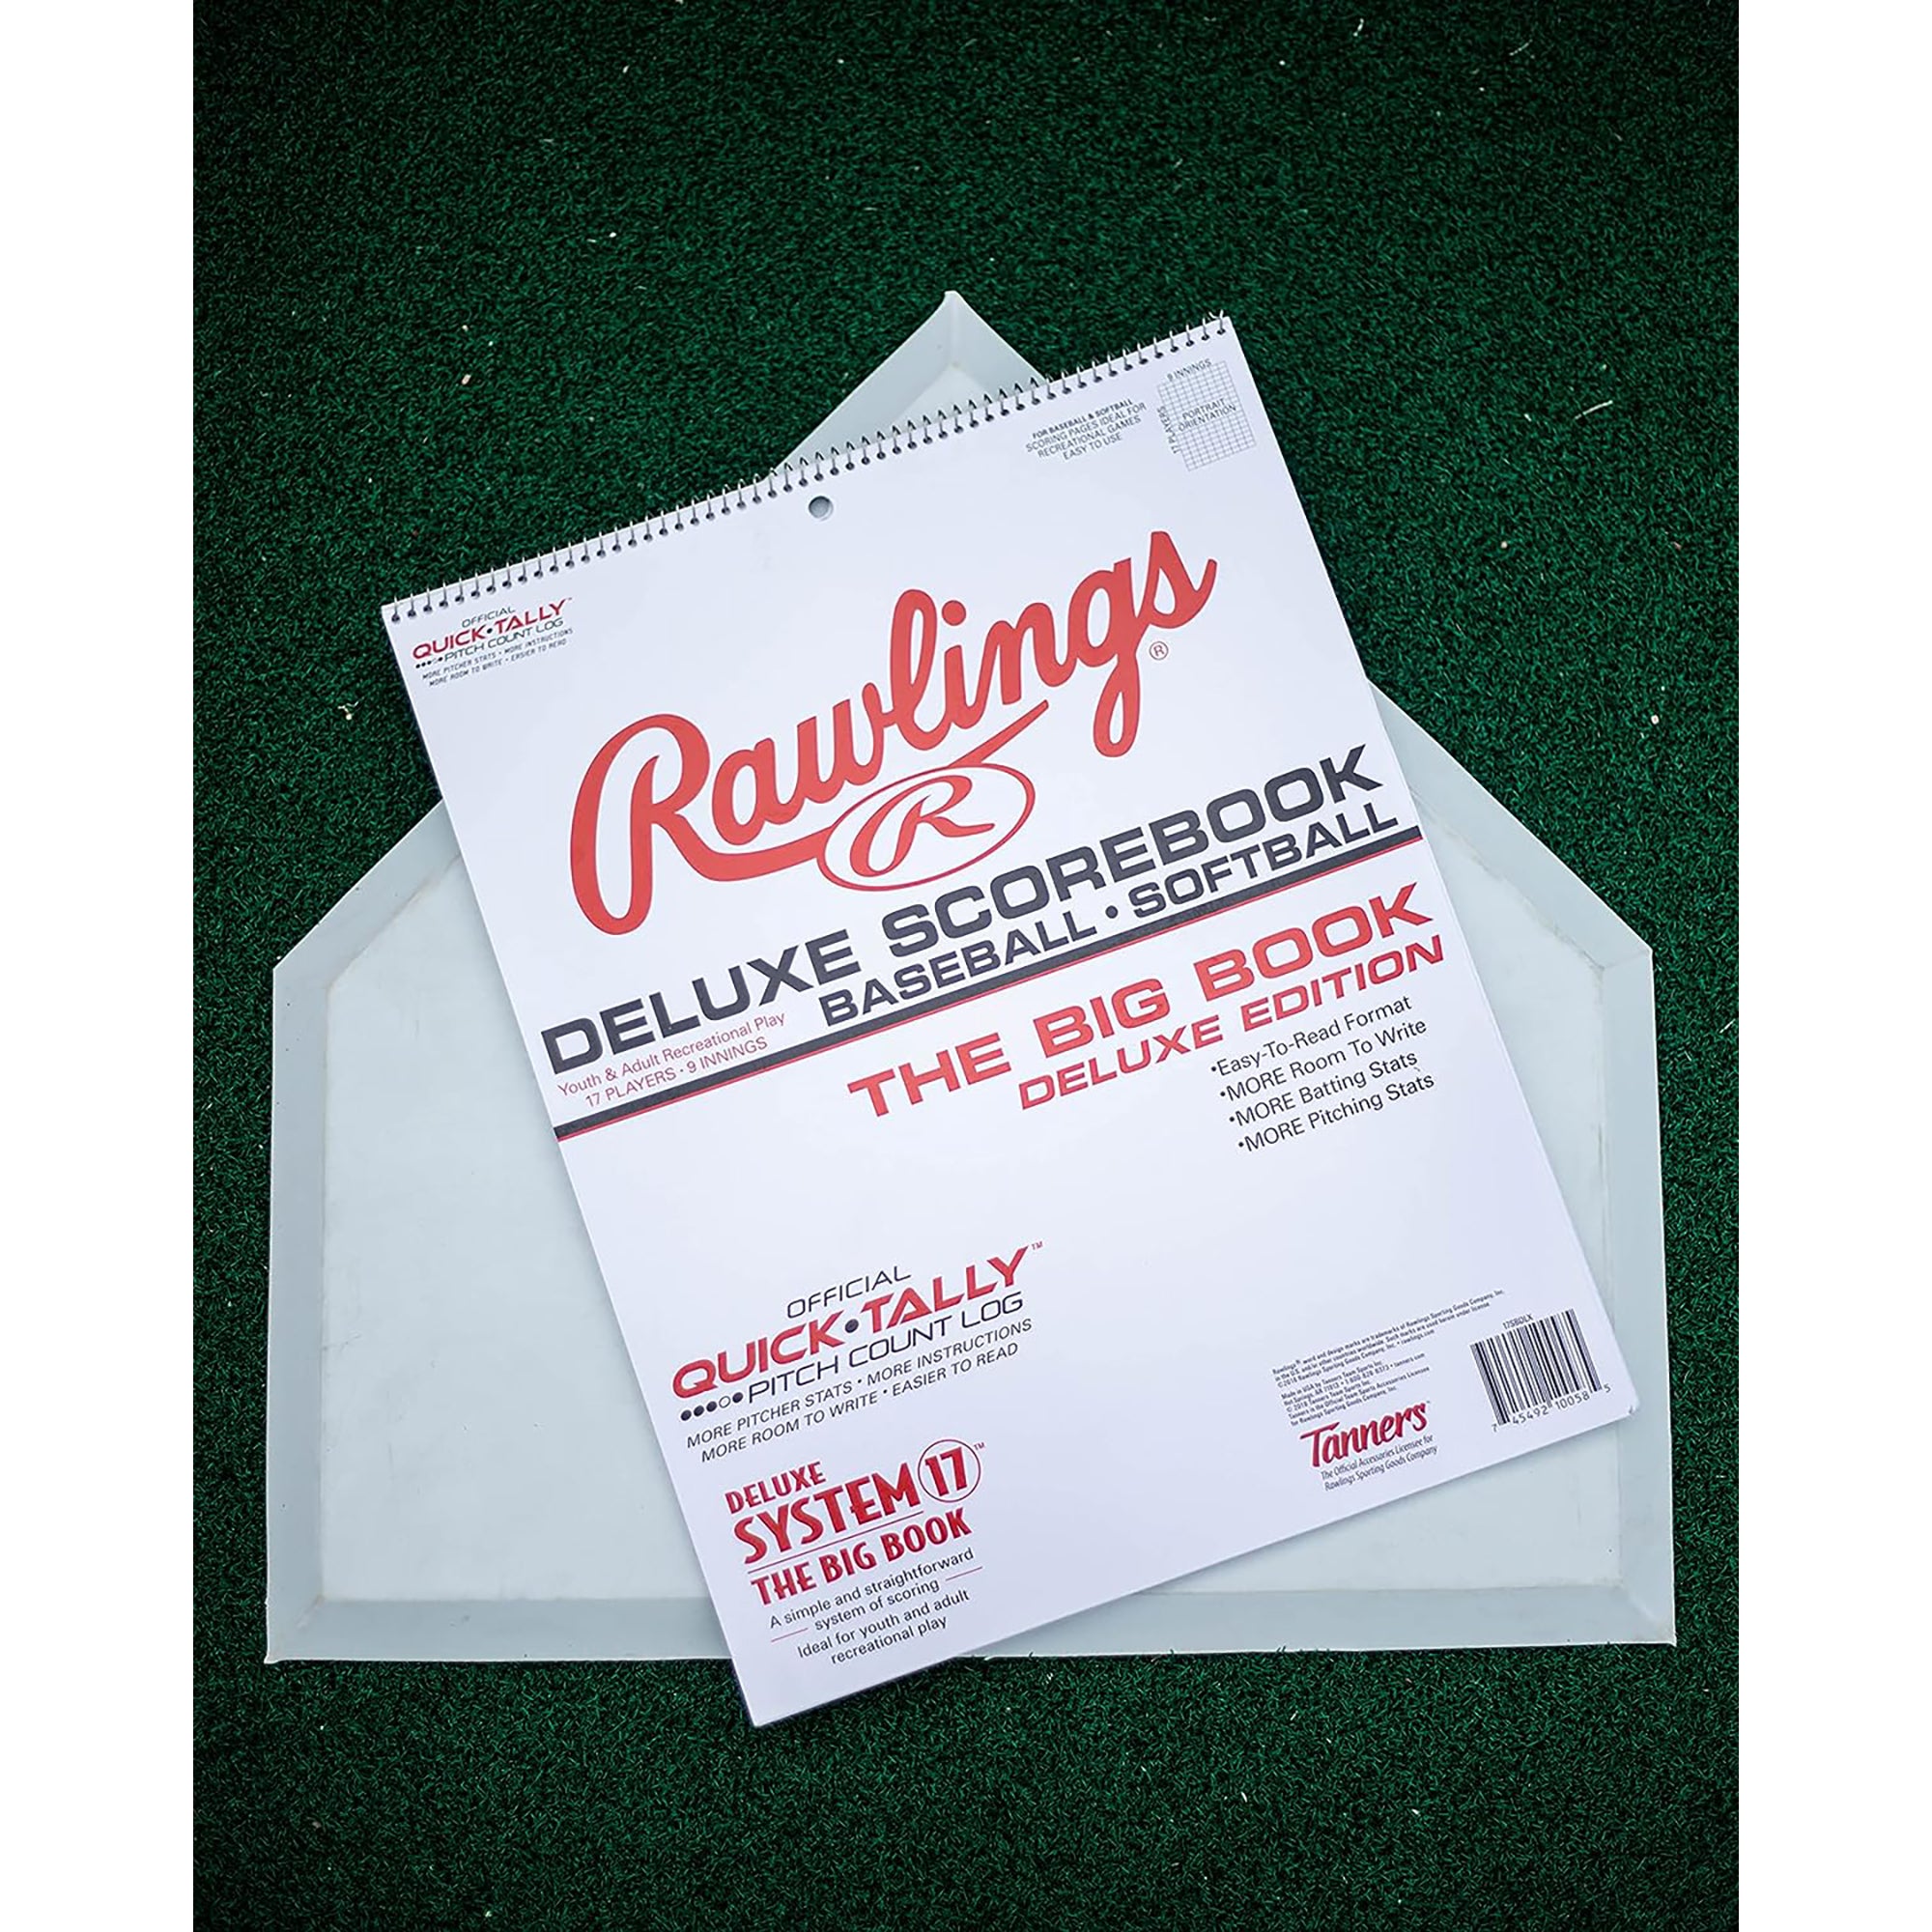 Rawlings System-17 Deluxe Baseball/Softball Scorebook Rawlings